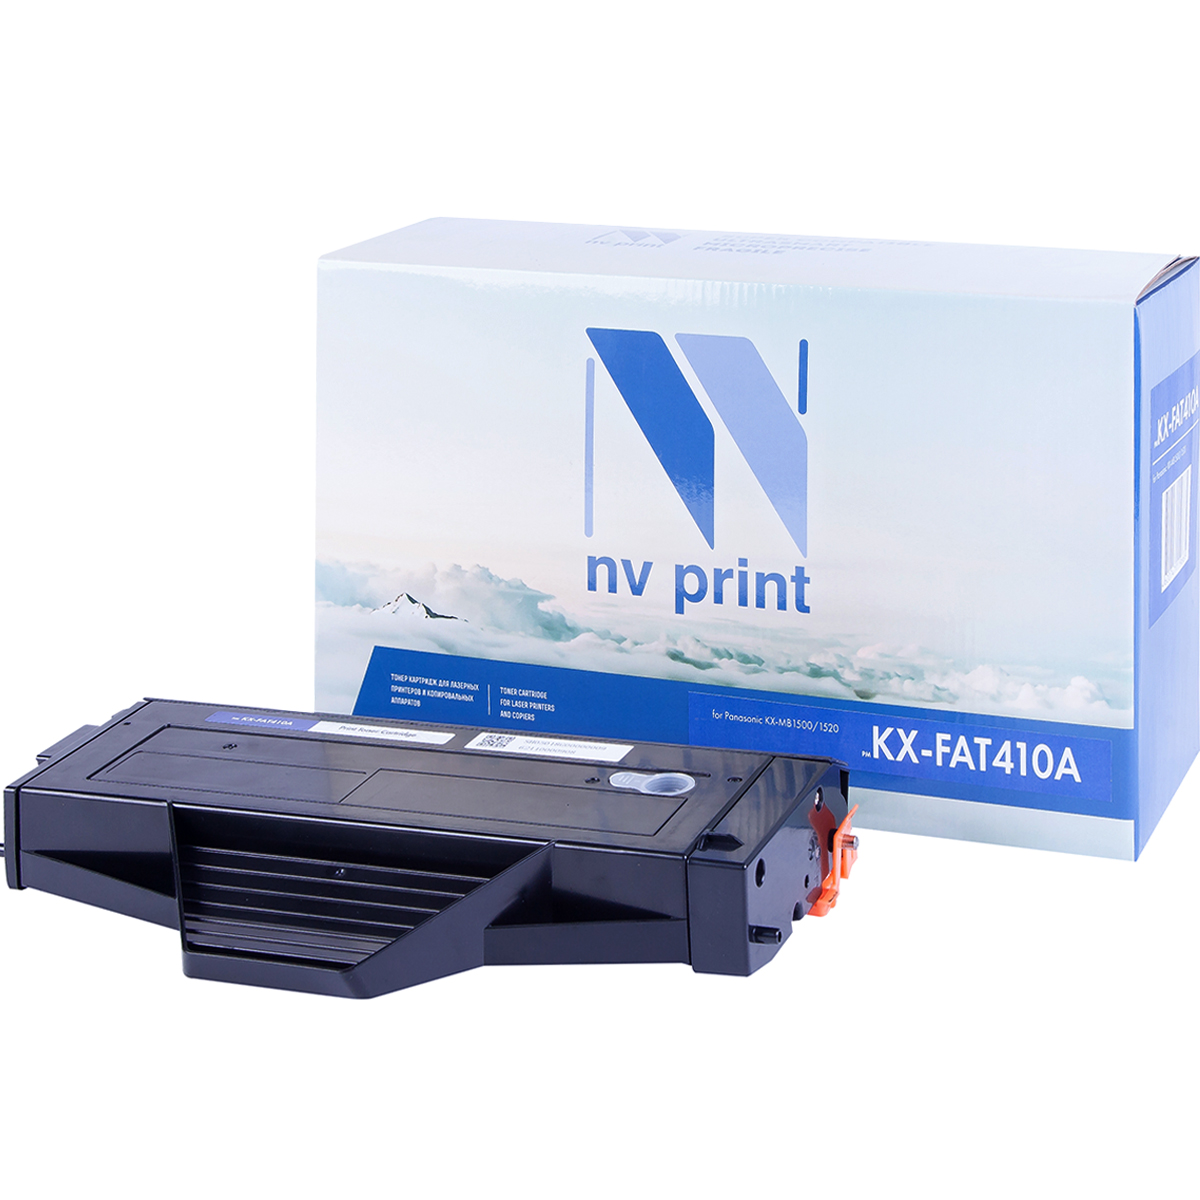 Картридж NV Print KX-FAT410A для Panasonic KX-MB1500/1520 (2500k), шт вал заряда pcr panasonic kx mb1500 1520 elp 10штук цена за упаковку elp pcr p1500 10